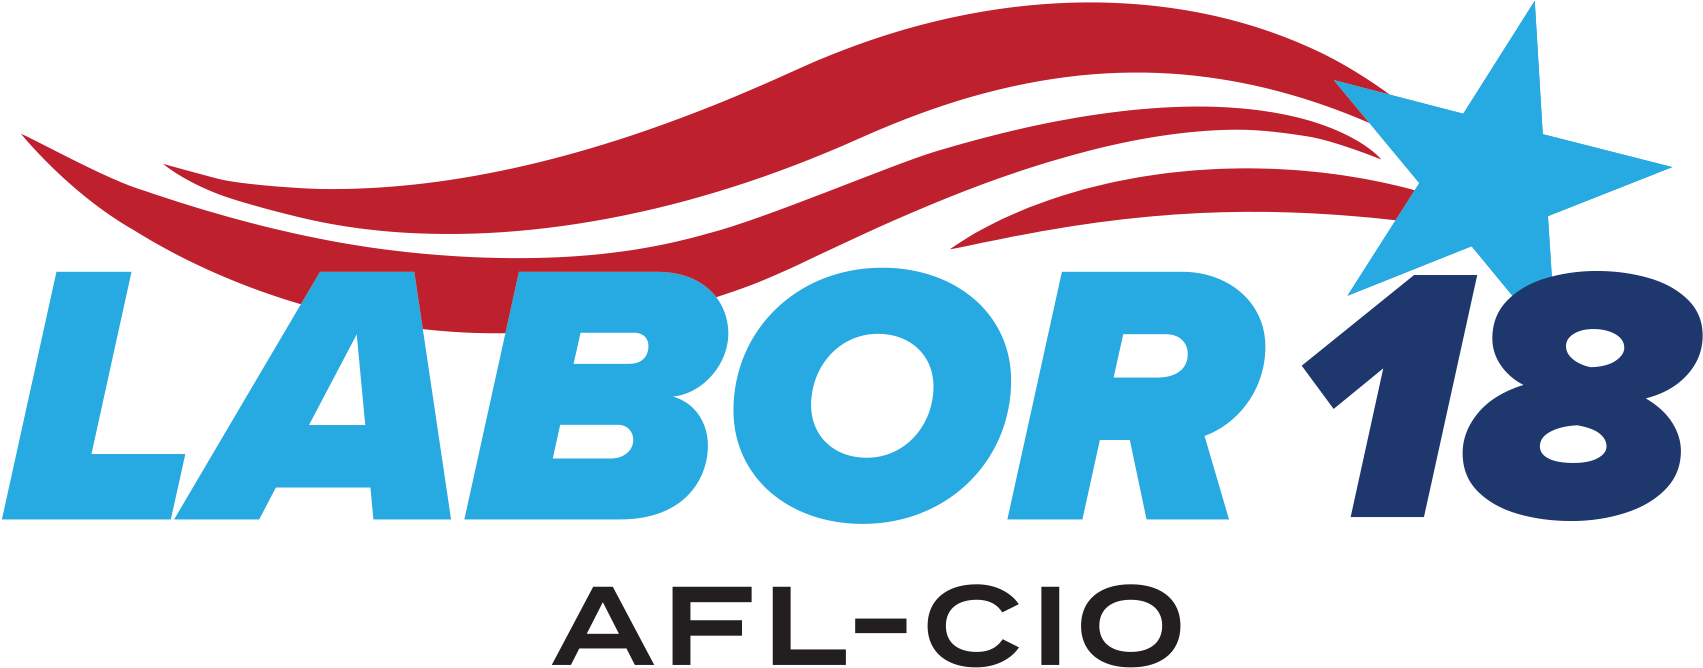 Labor2018 Logo Color - Afl-cio Nevada State (1960x740)